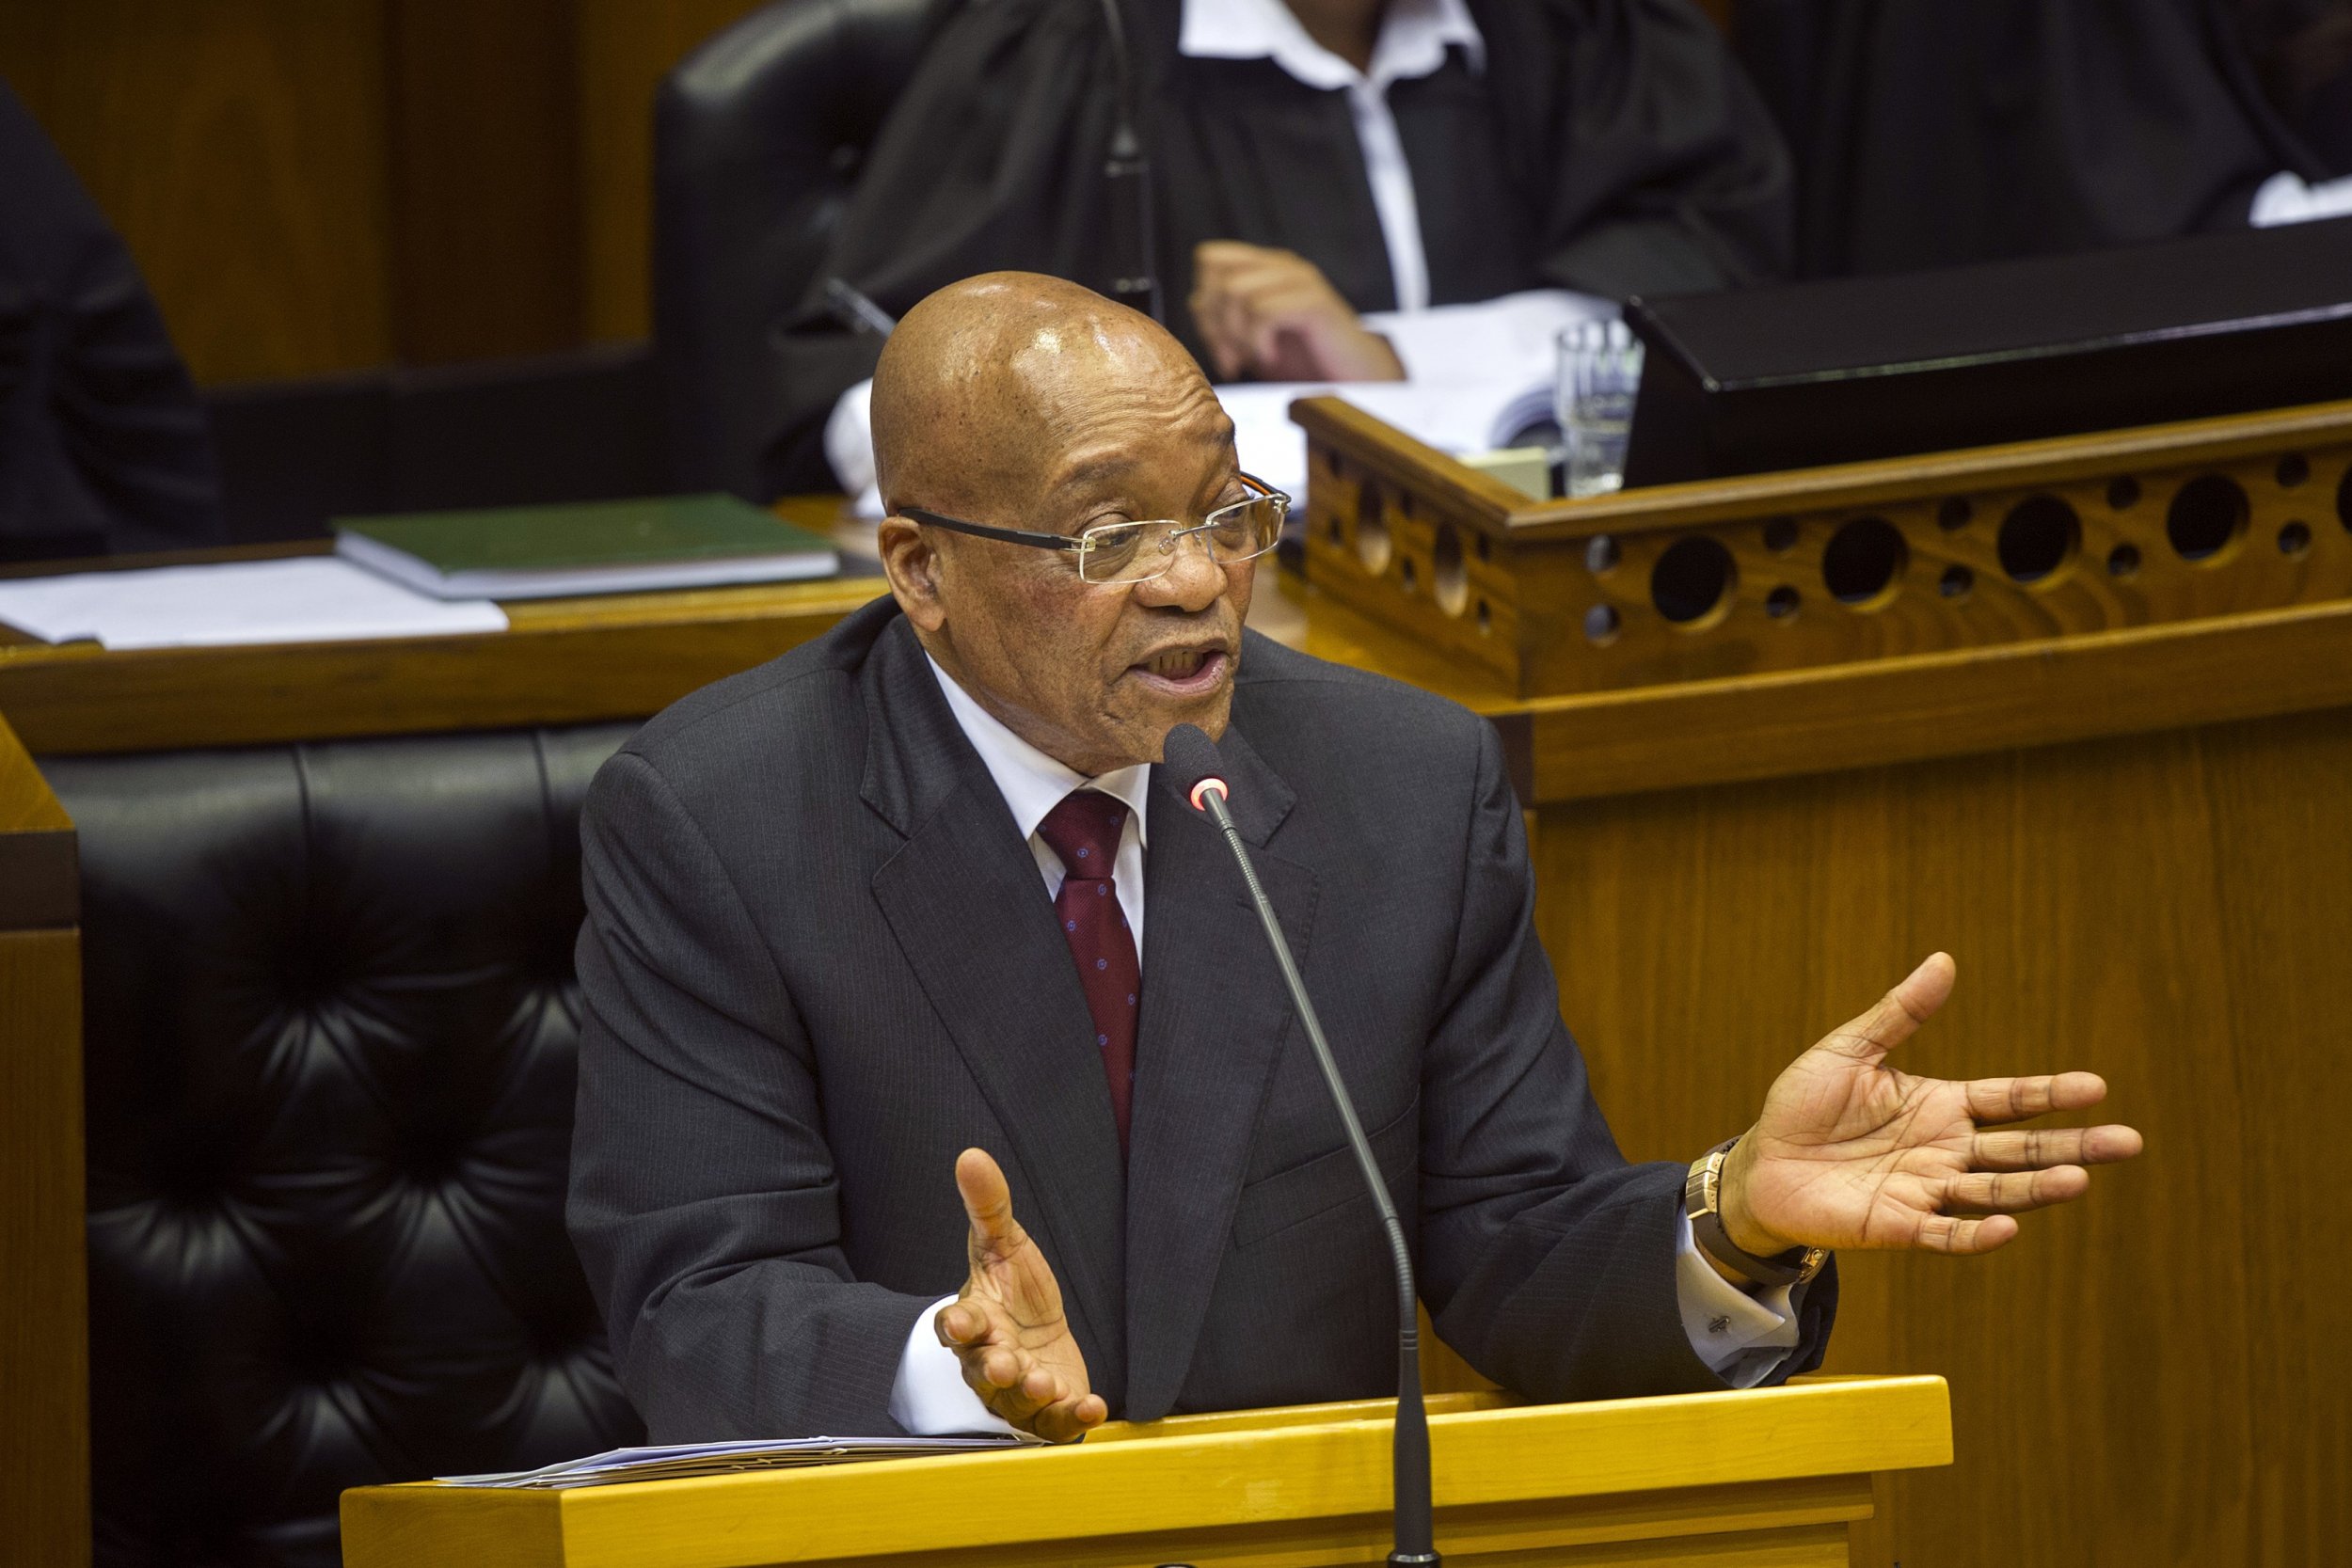 Jacob Zuma answers questions about Nkandla.